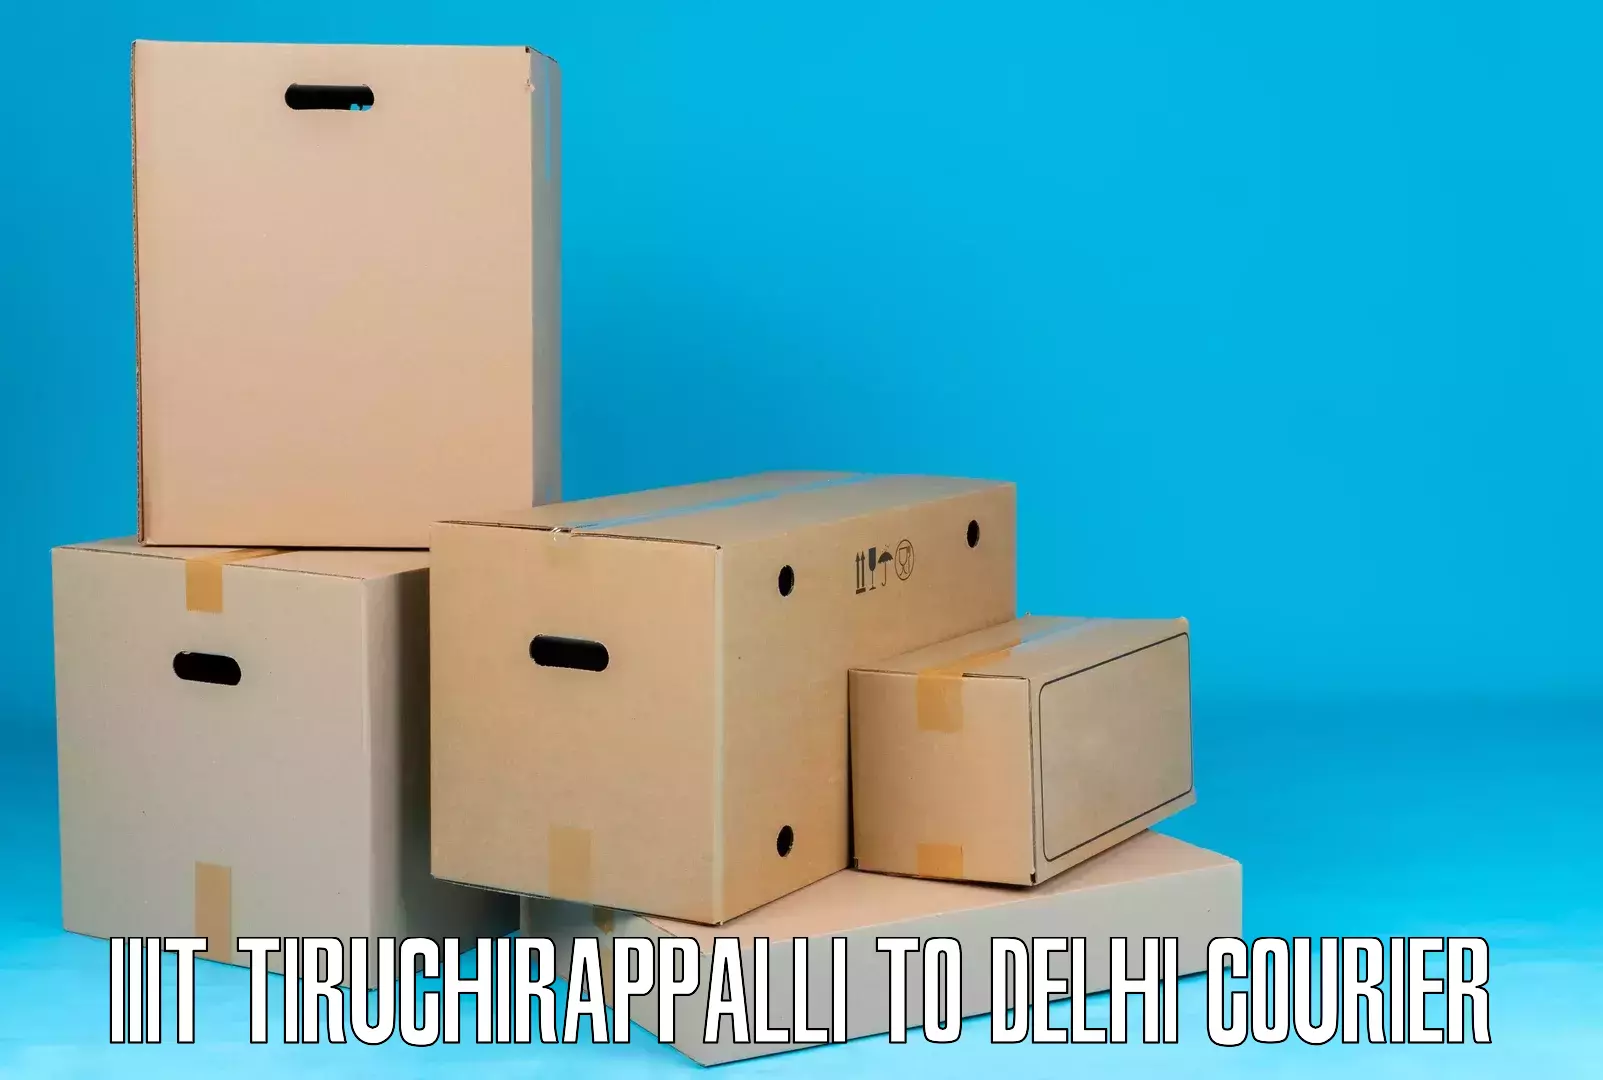 24-hour courier service IIIT Tiruchirappalli to Delhi